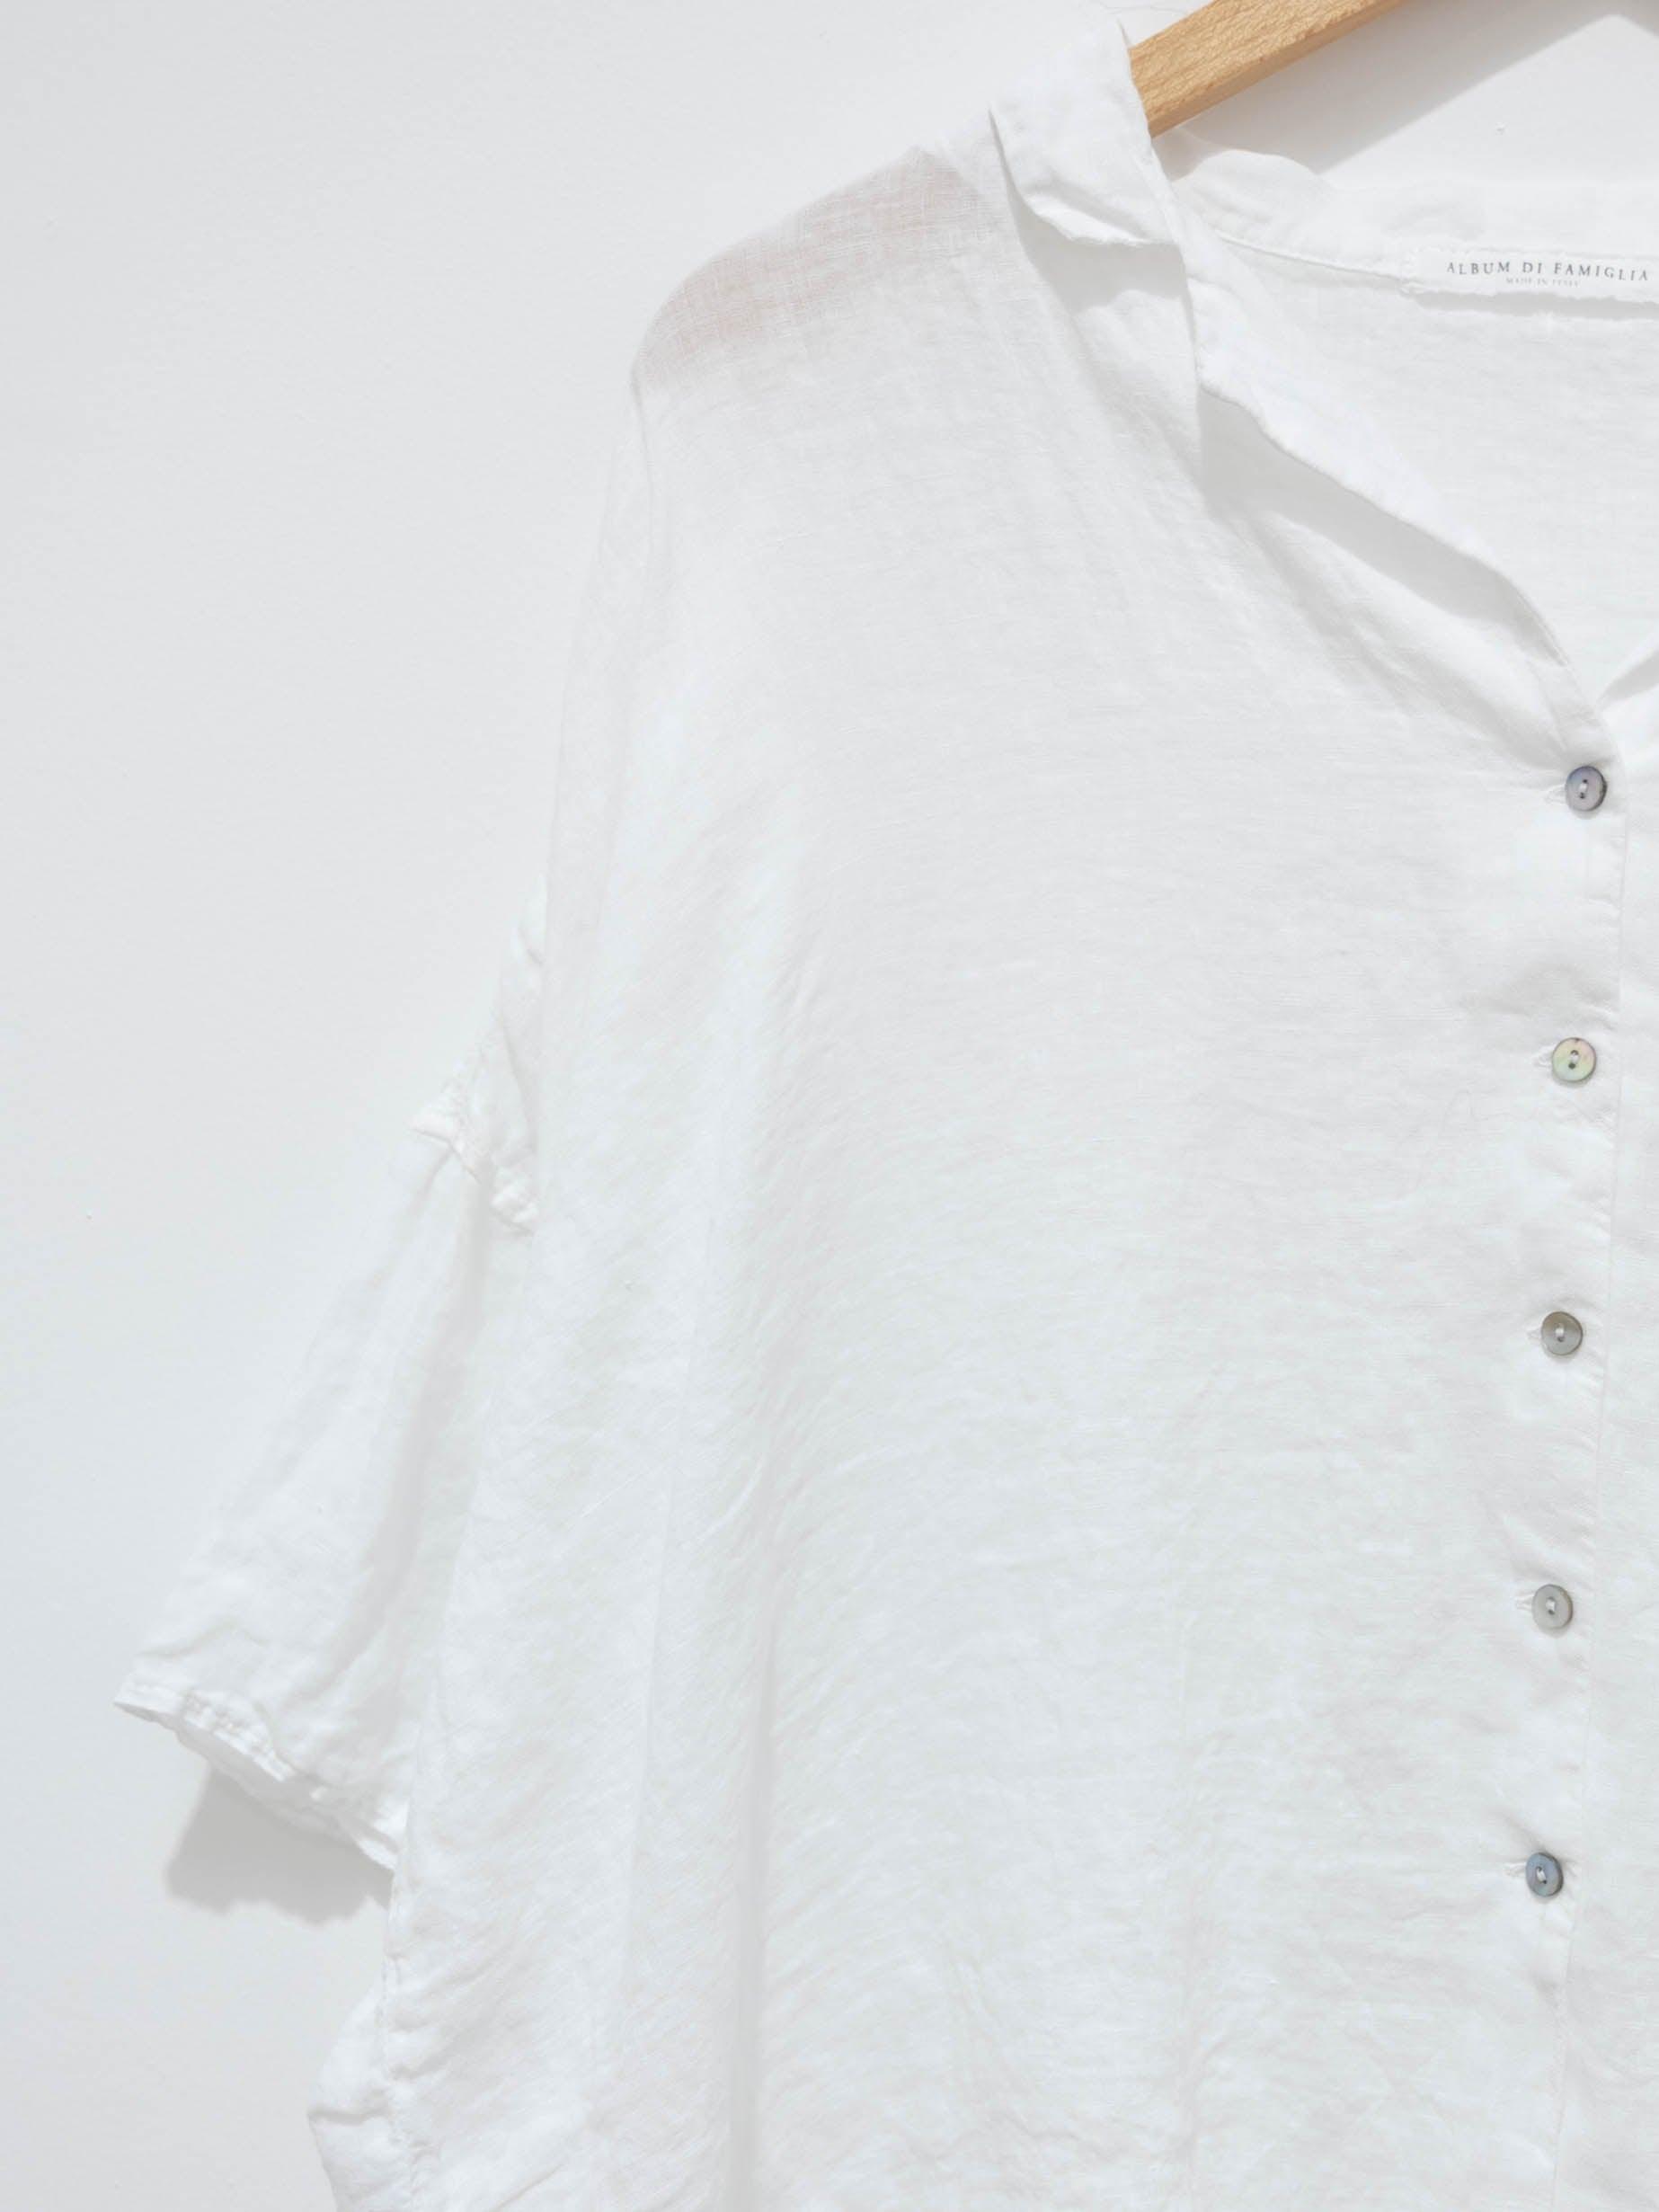 Namu Shop - Album di Famiglia Light Linen Shirt - White